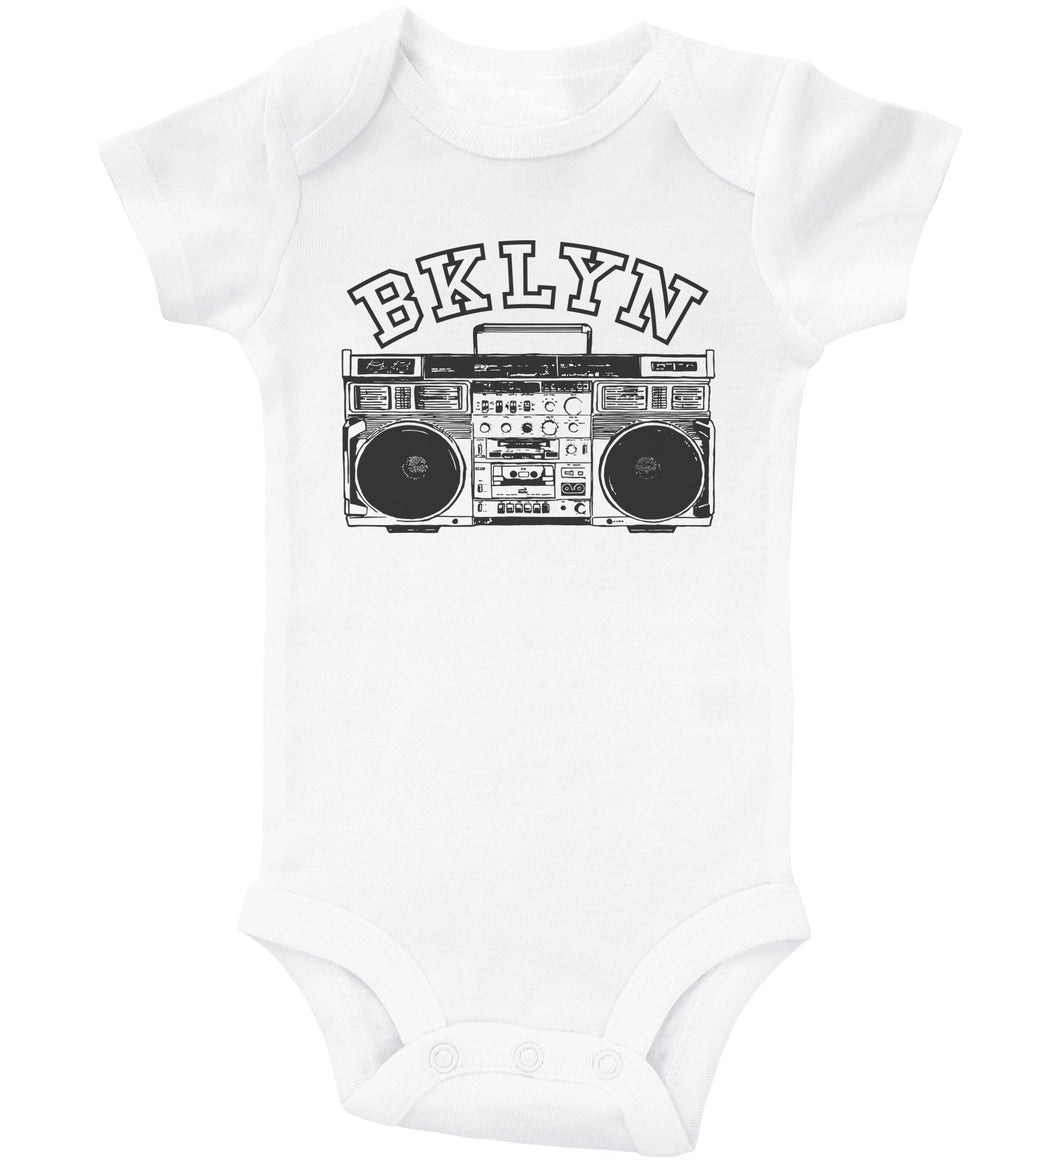 BKLYN / Brooklyn Baby Onesie - Baffle